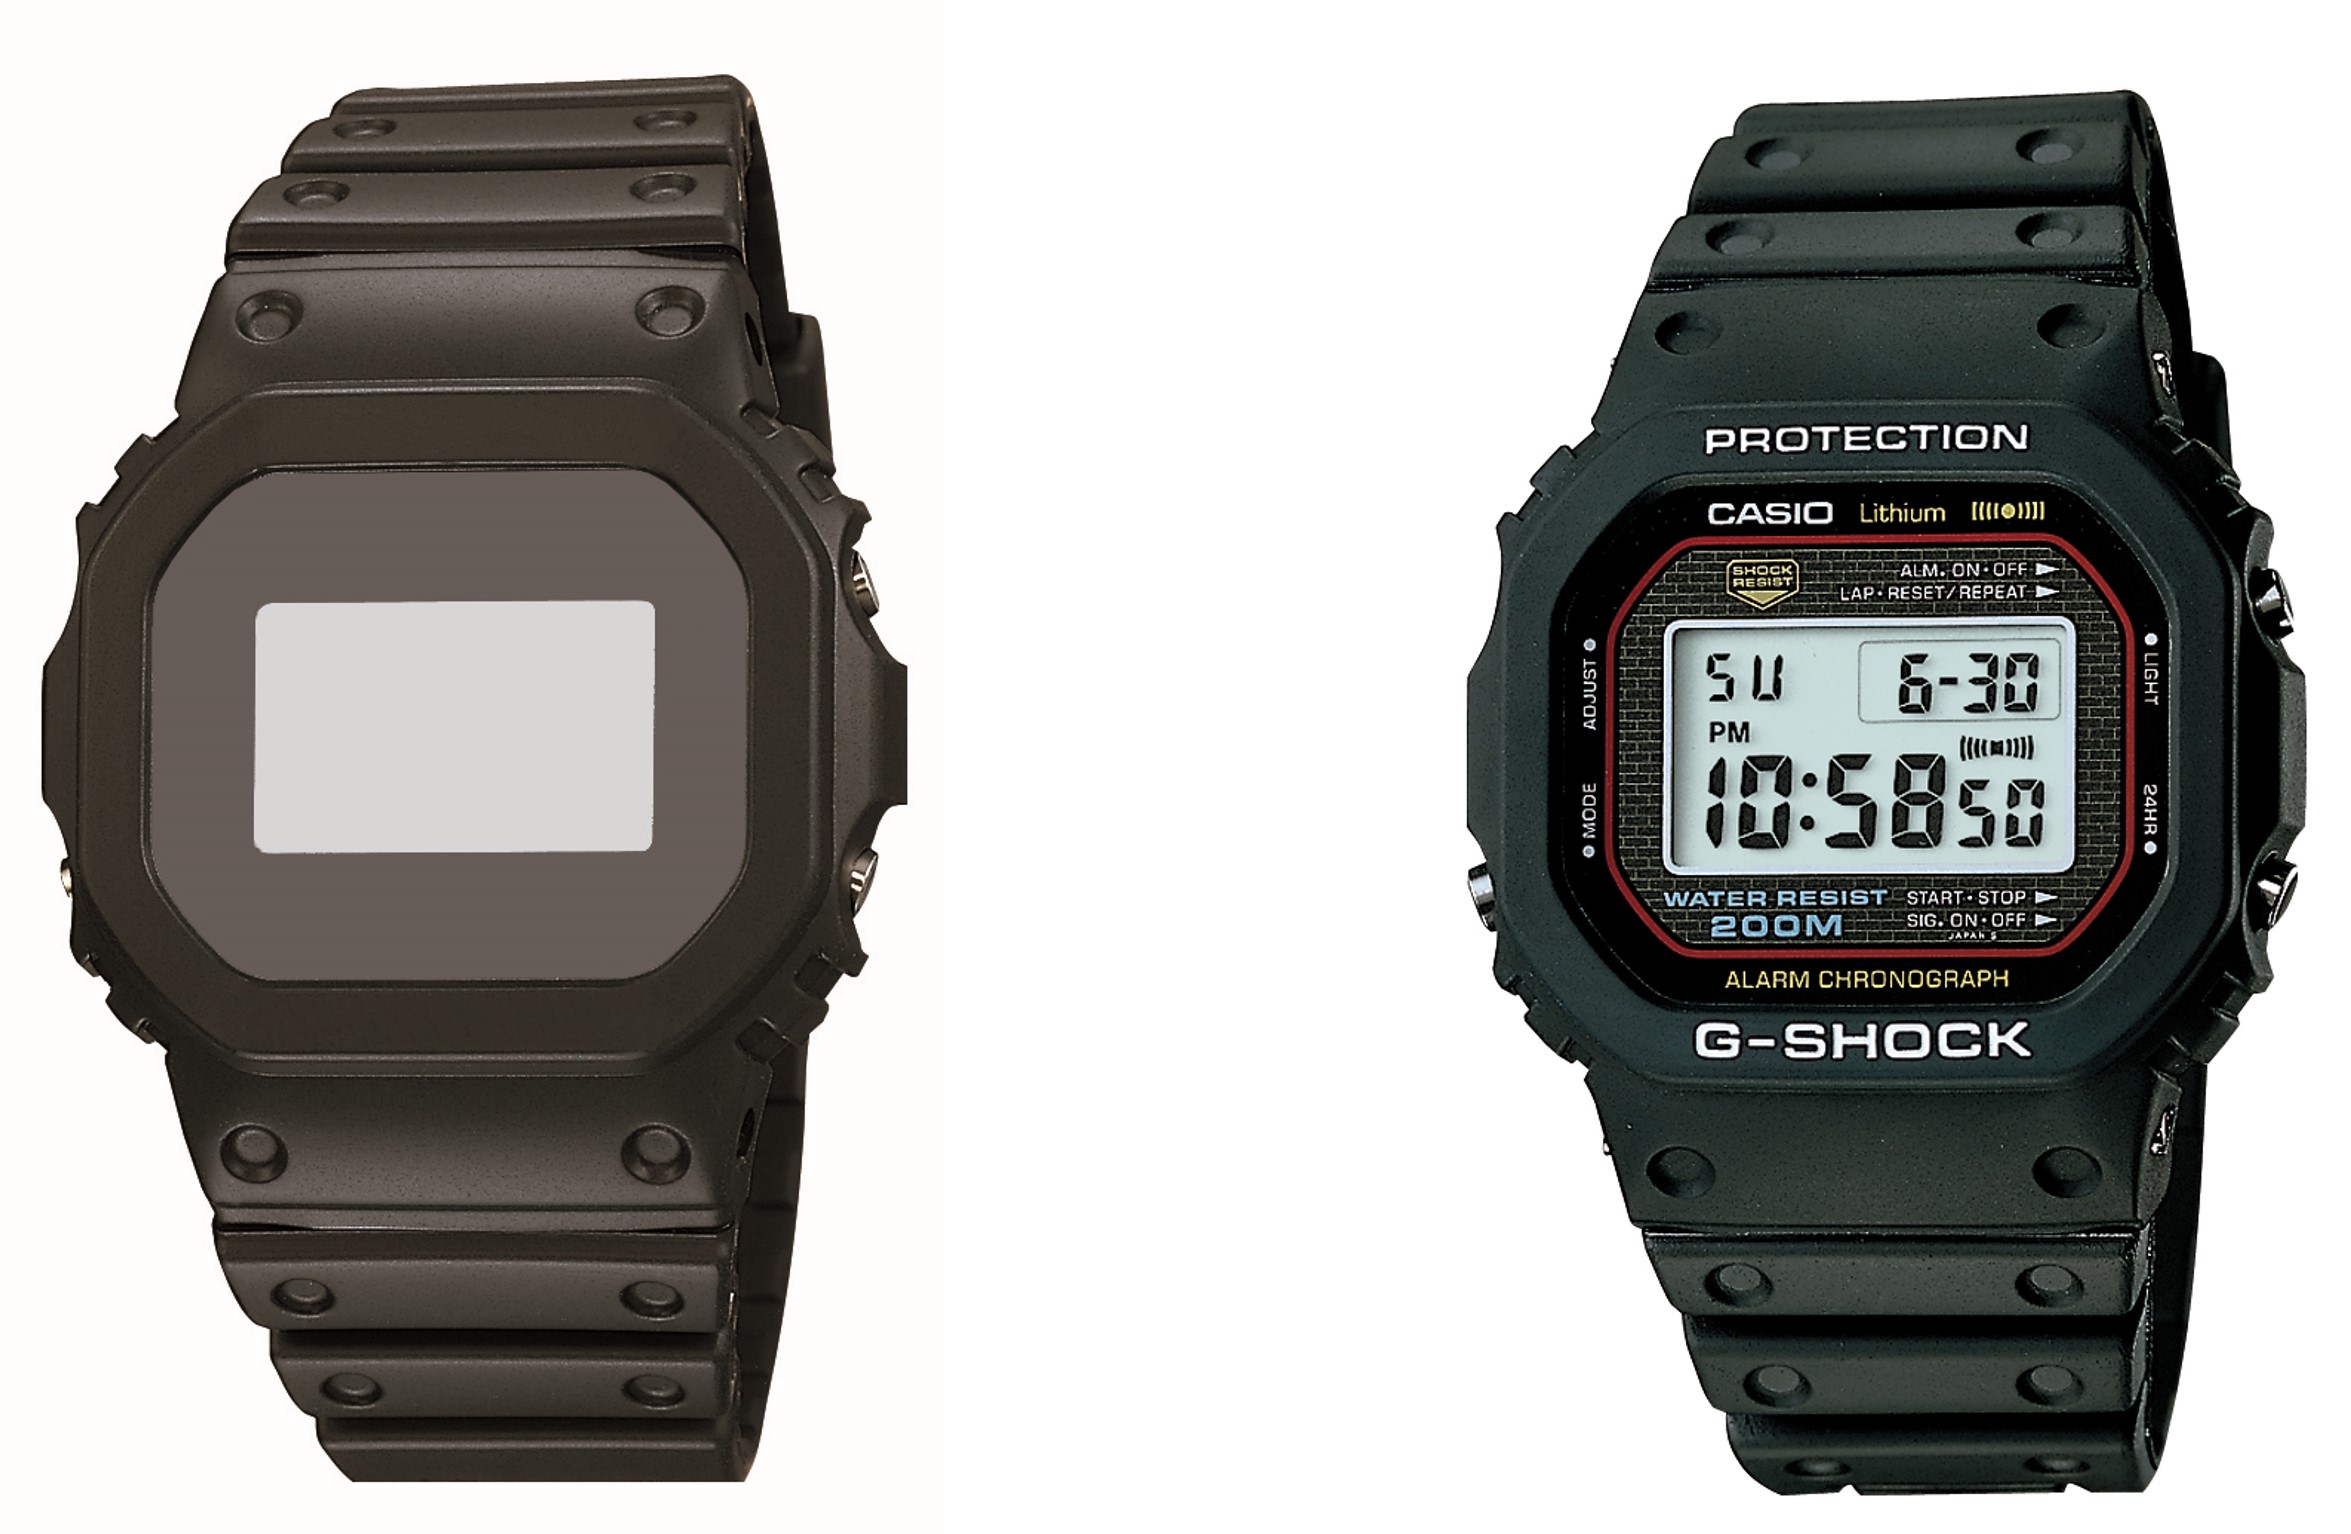 カシオ「G-SHOCK」初代モデルが立体商標に登録─腕時計形状の登録は国内初